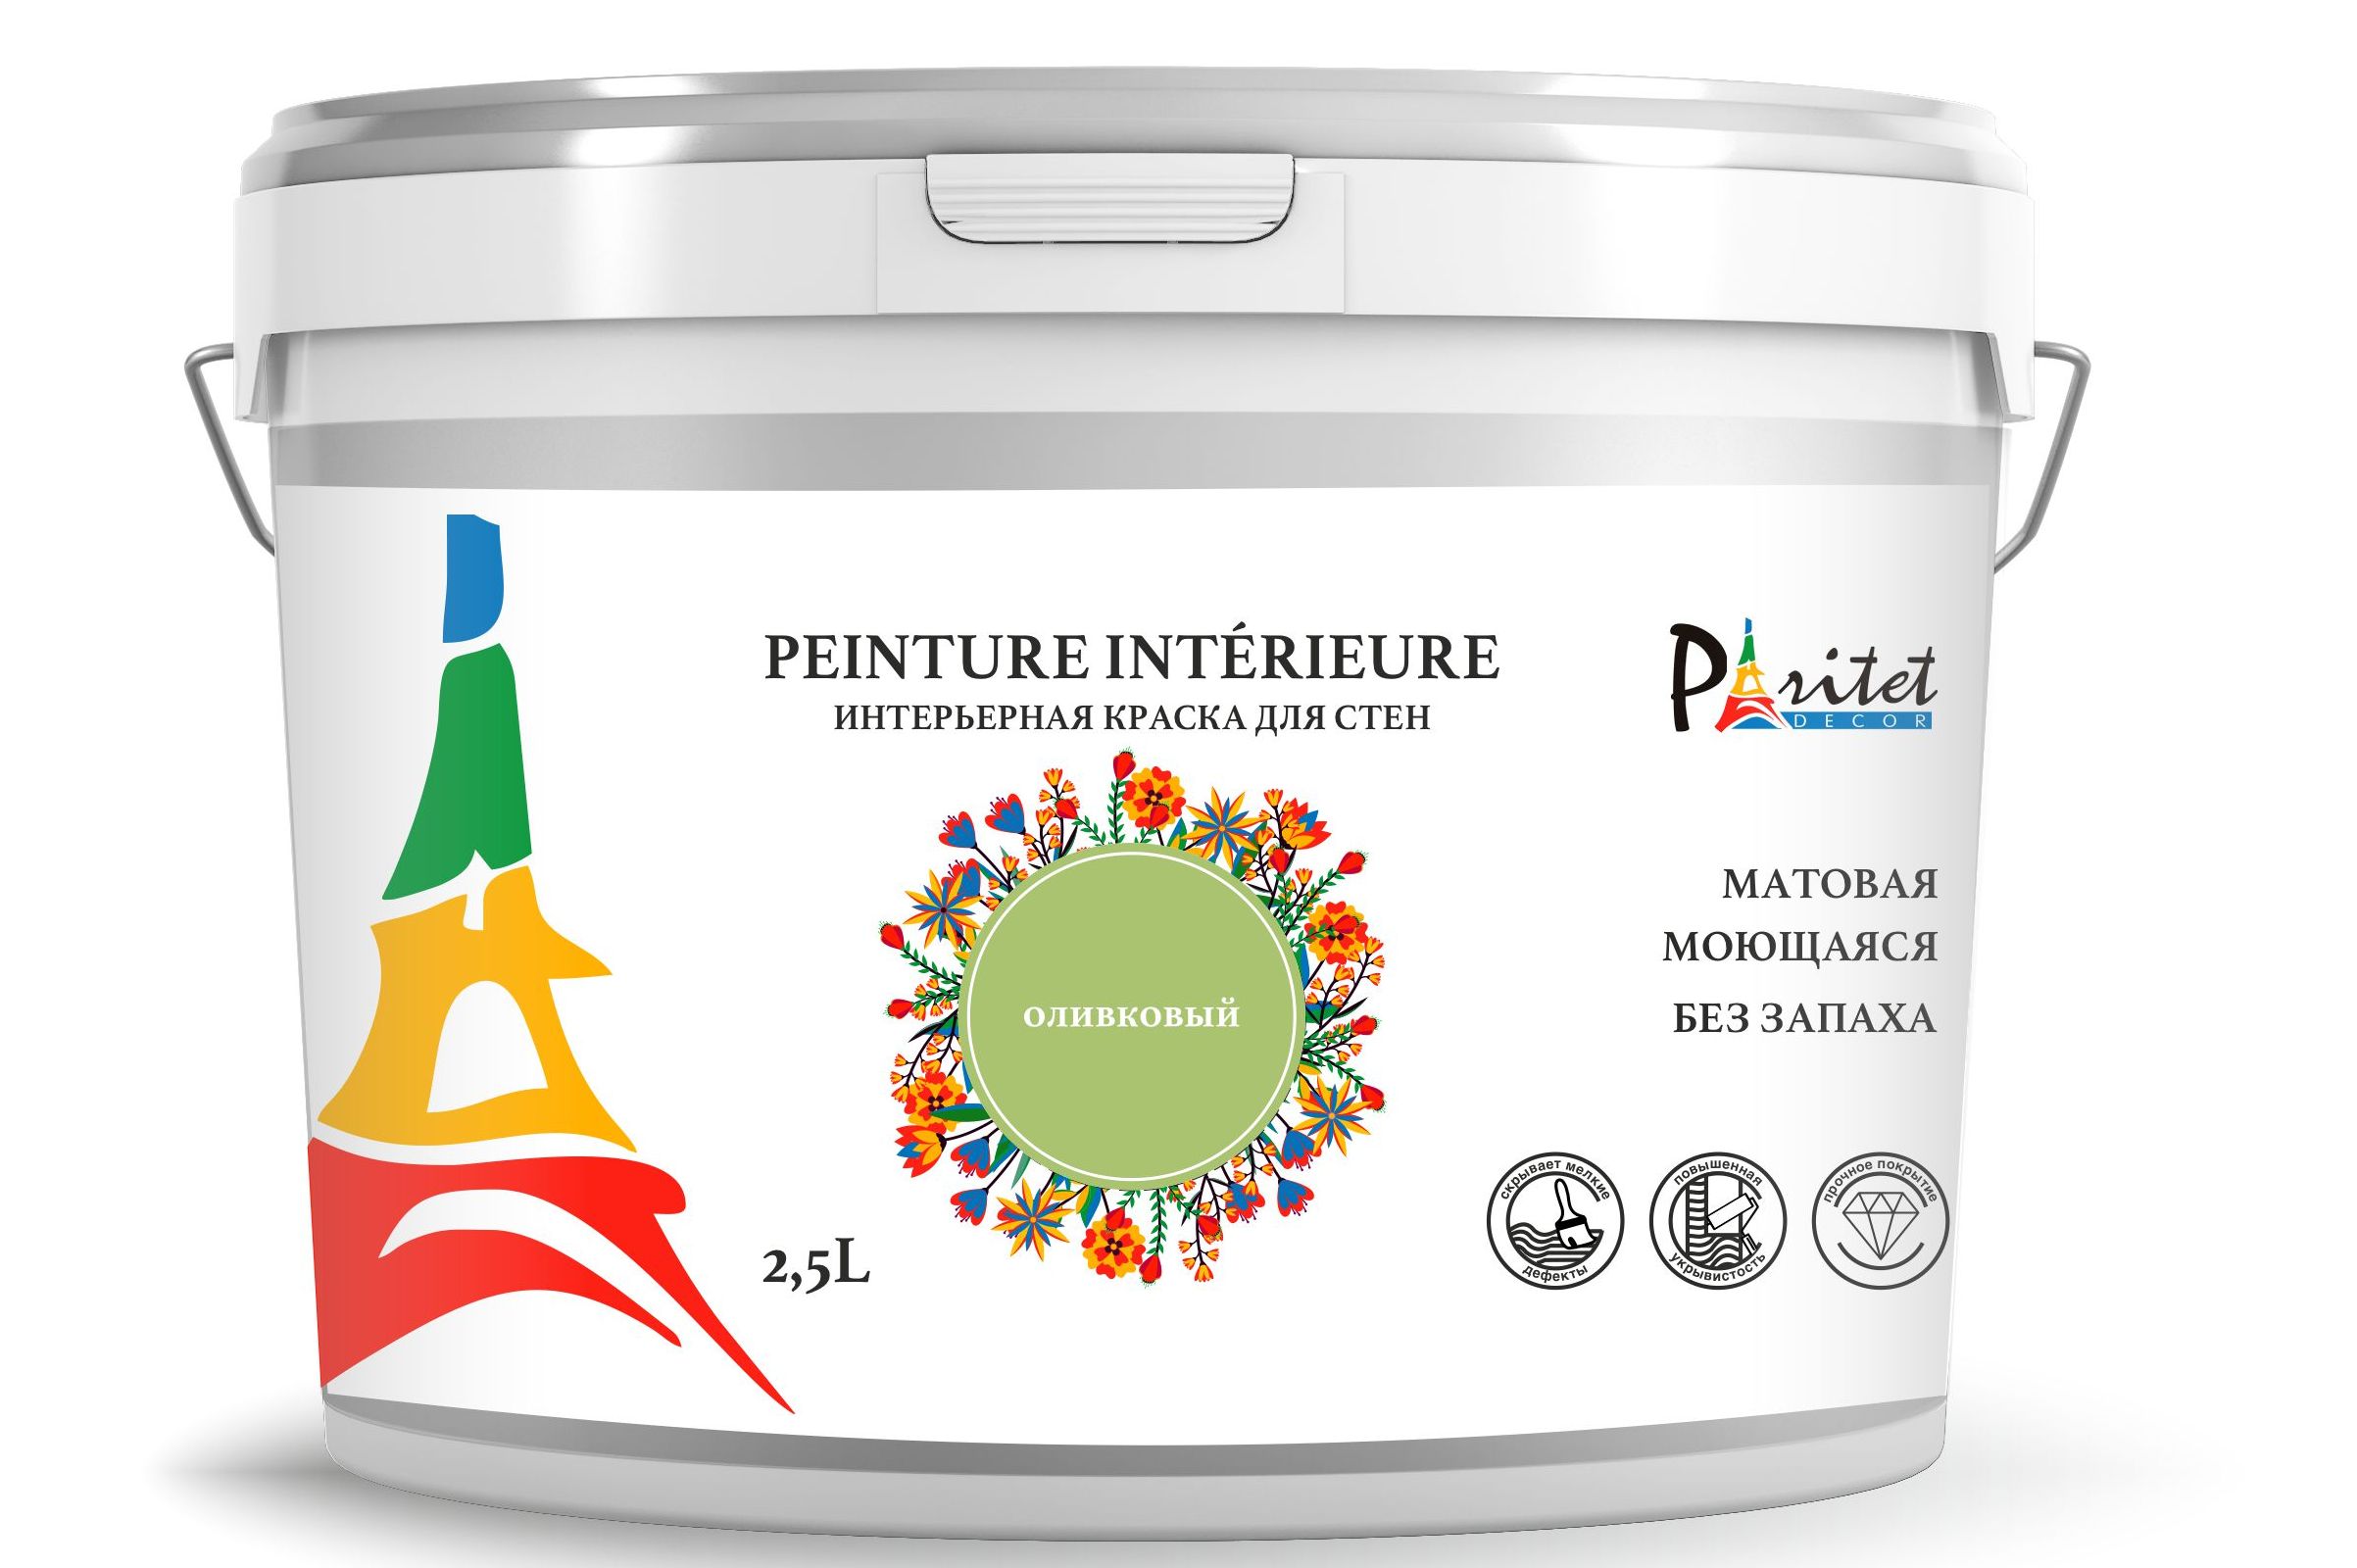 Краска интерьерная PARITET 2,5л цвет: оливковый